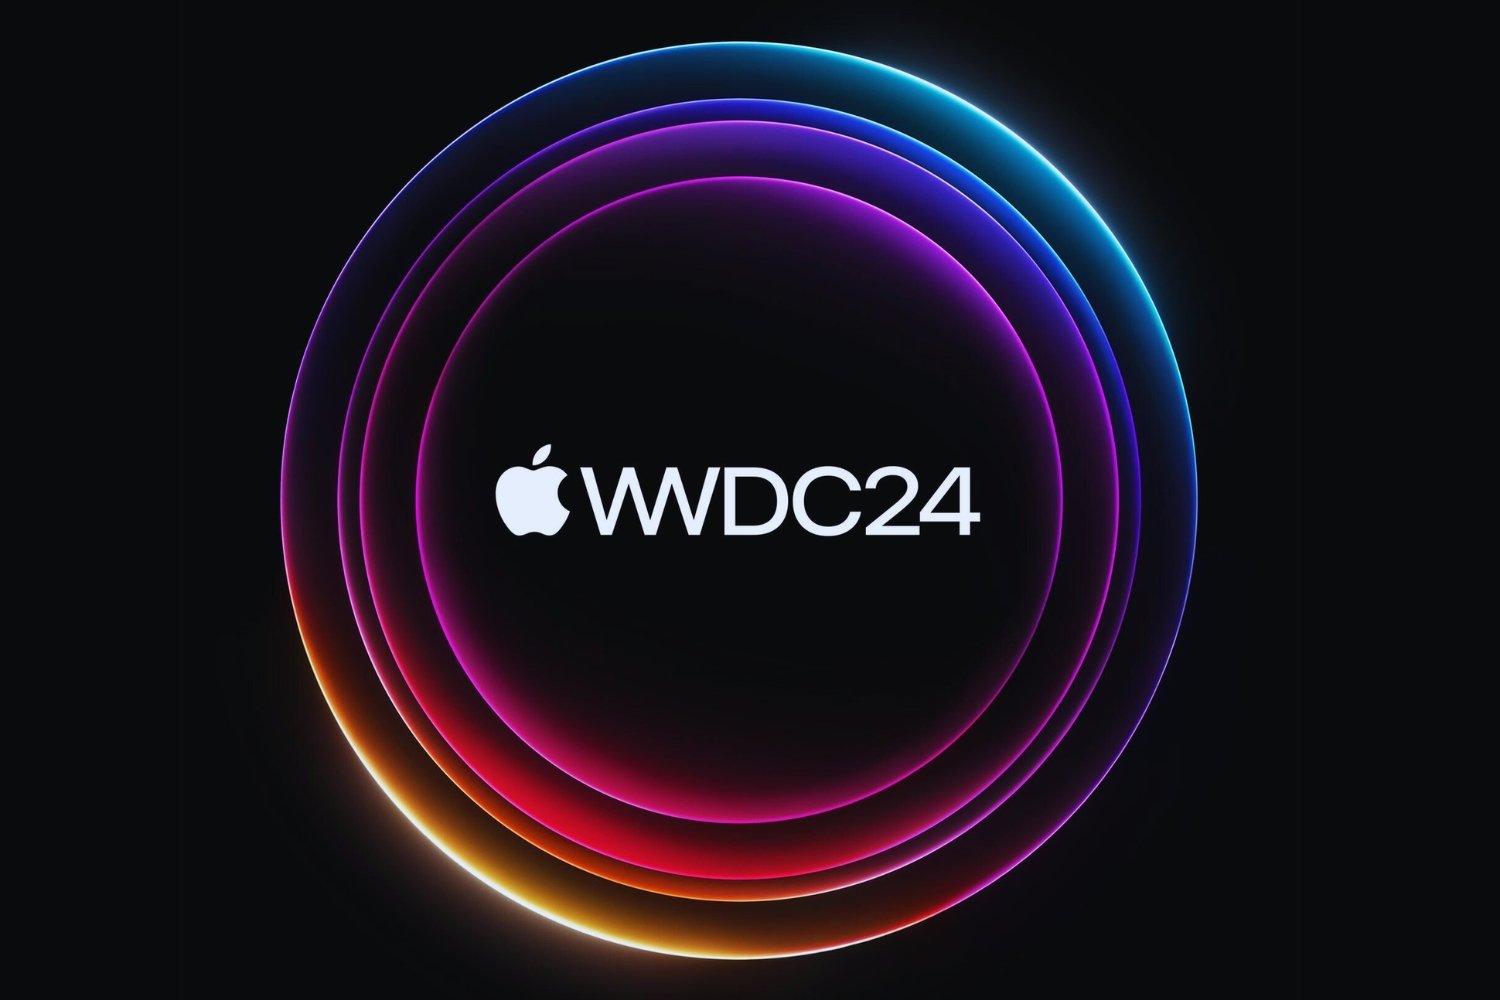 WWDC 2024 Apple